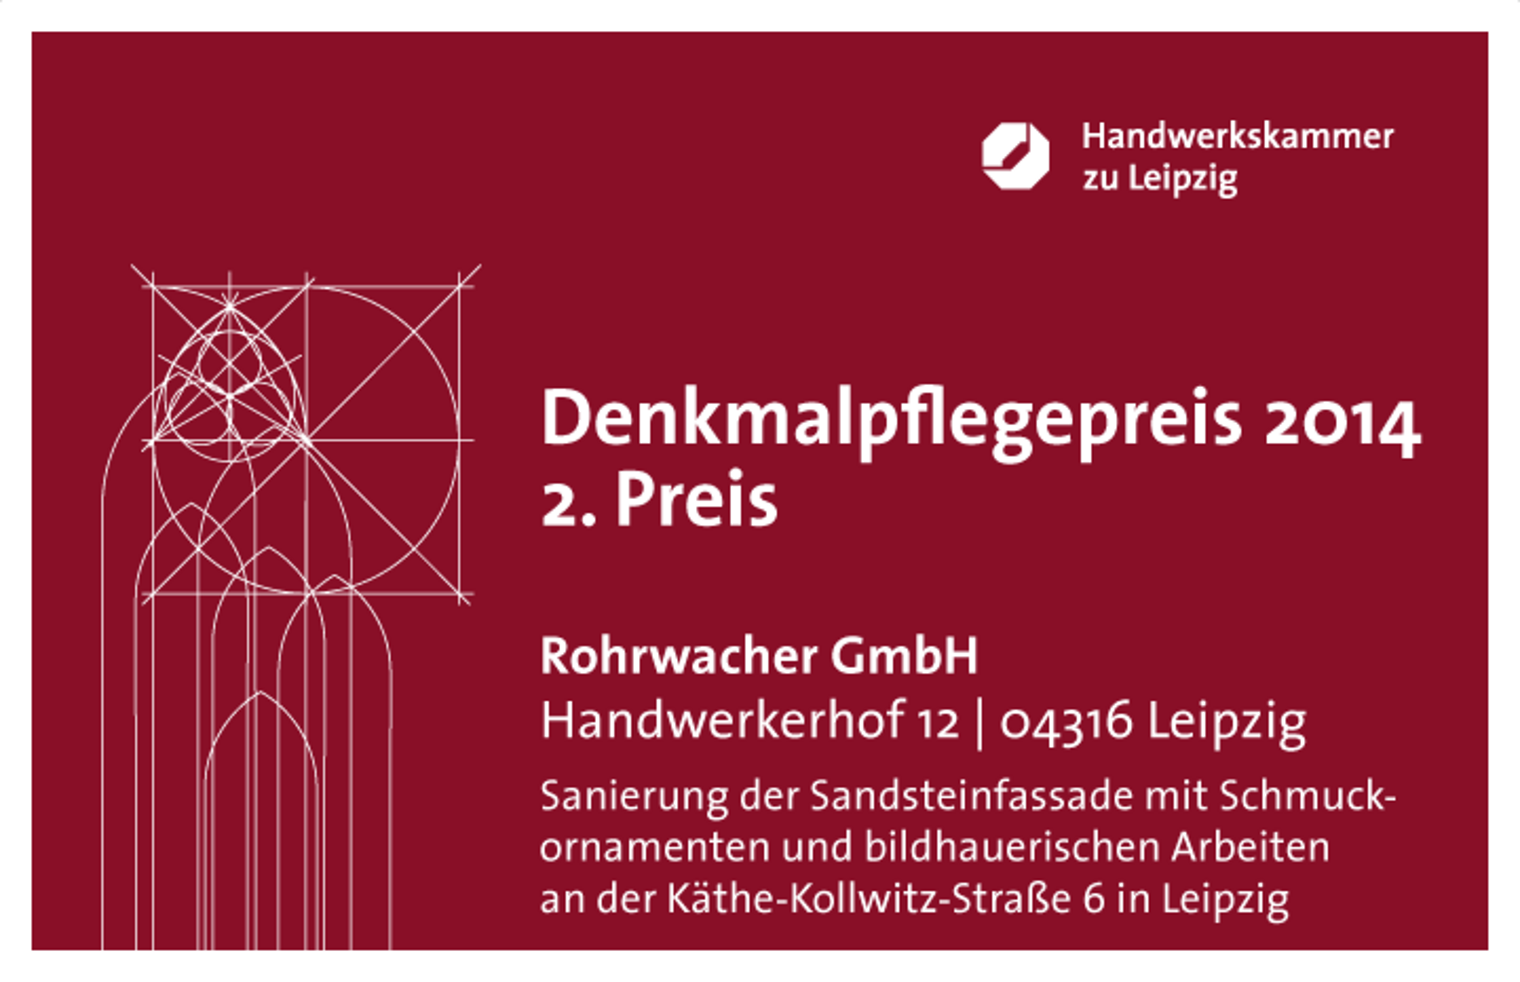 Denkmalpflegepreis 2014 der Handwerkskammer zu Leipzig 3